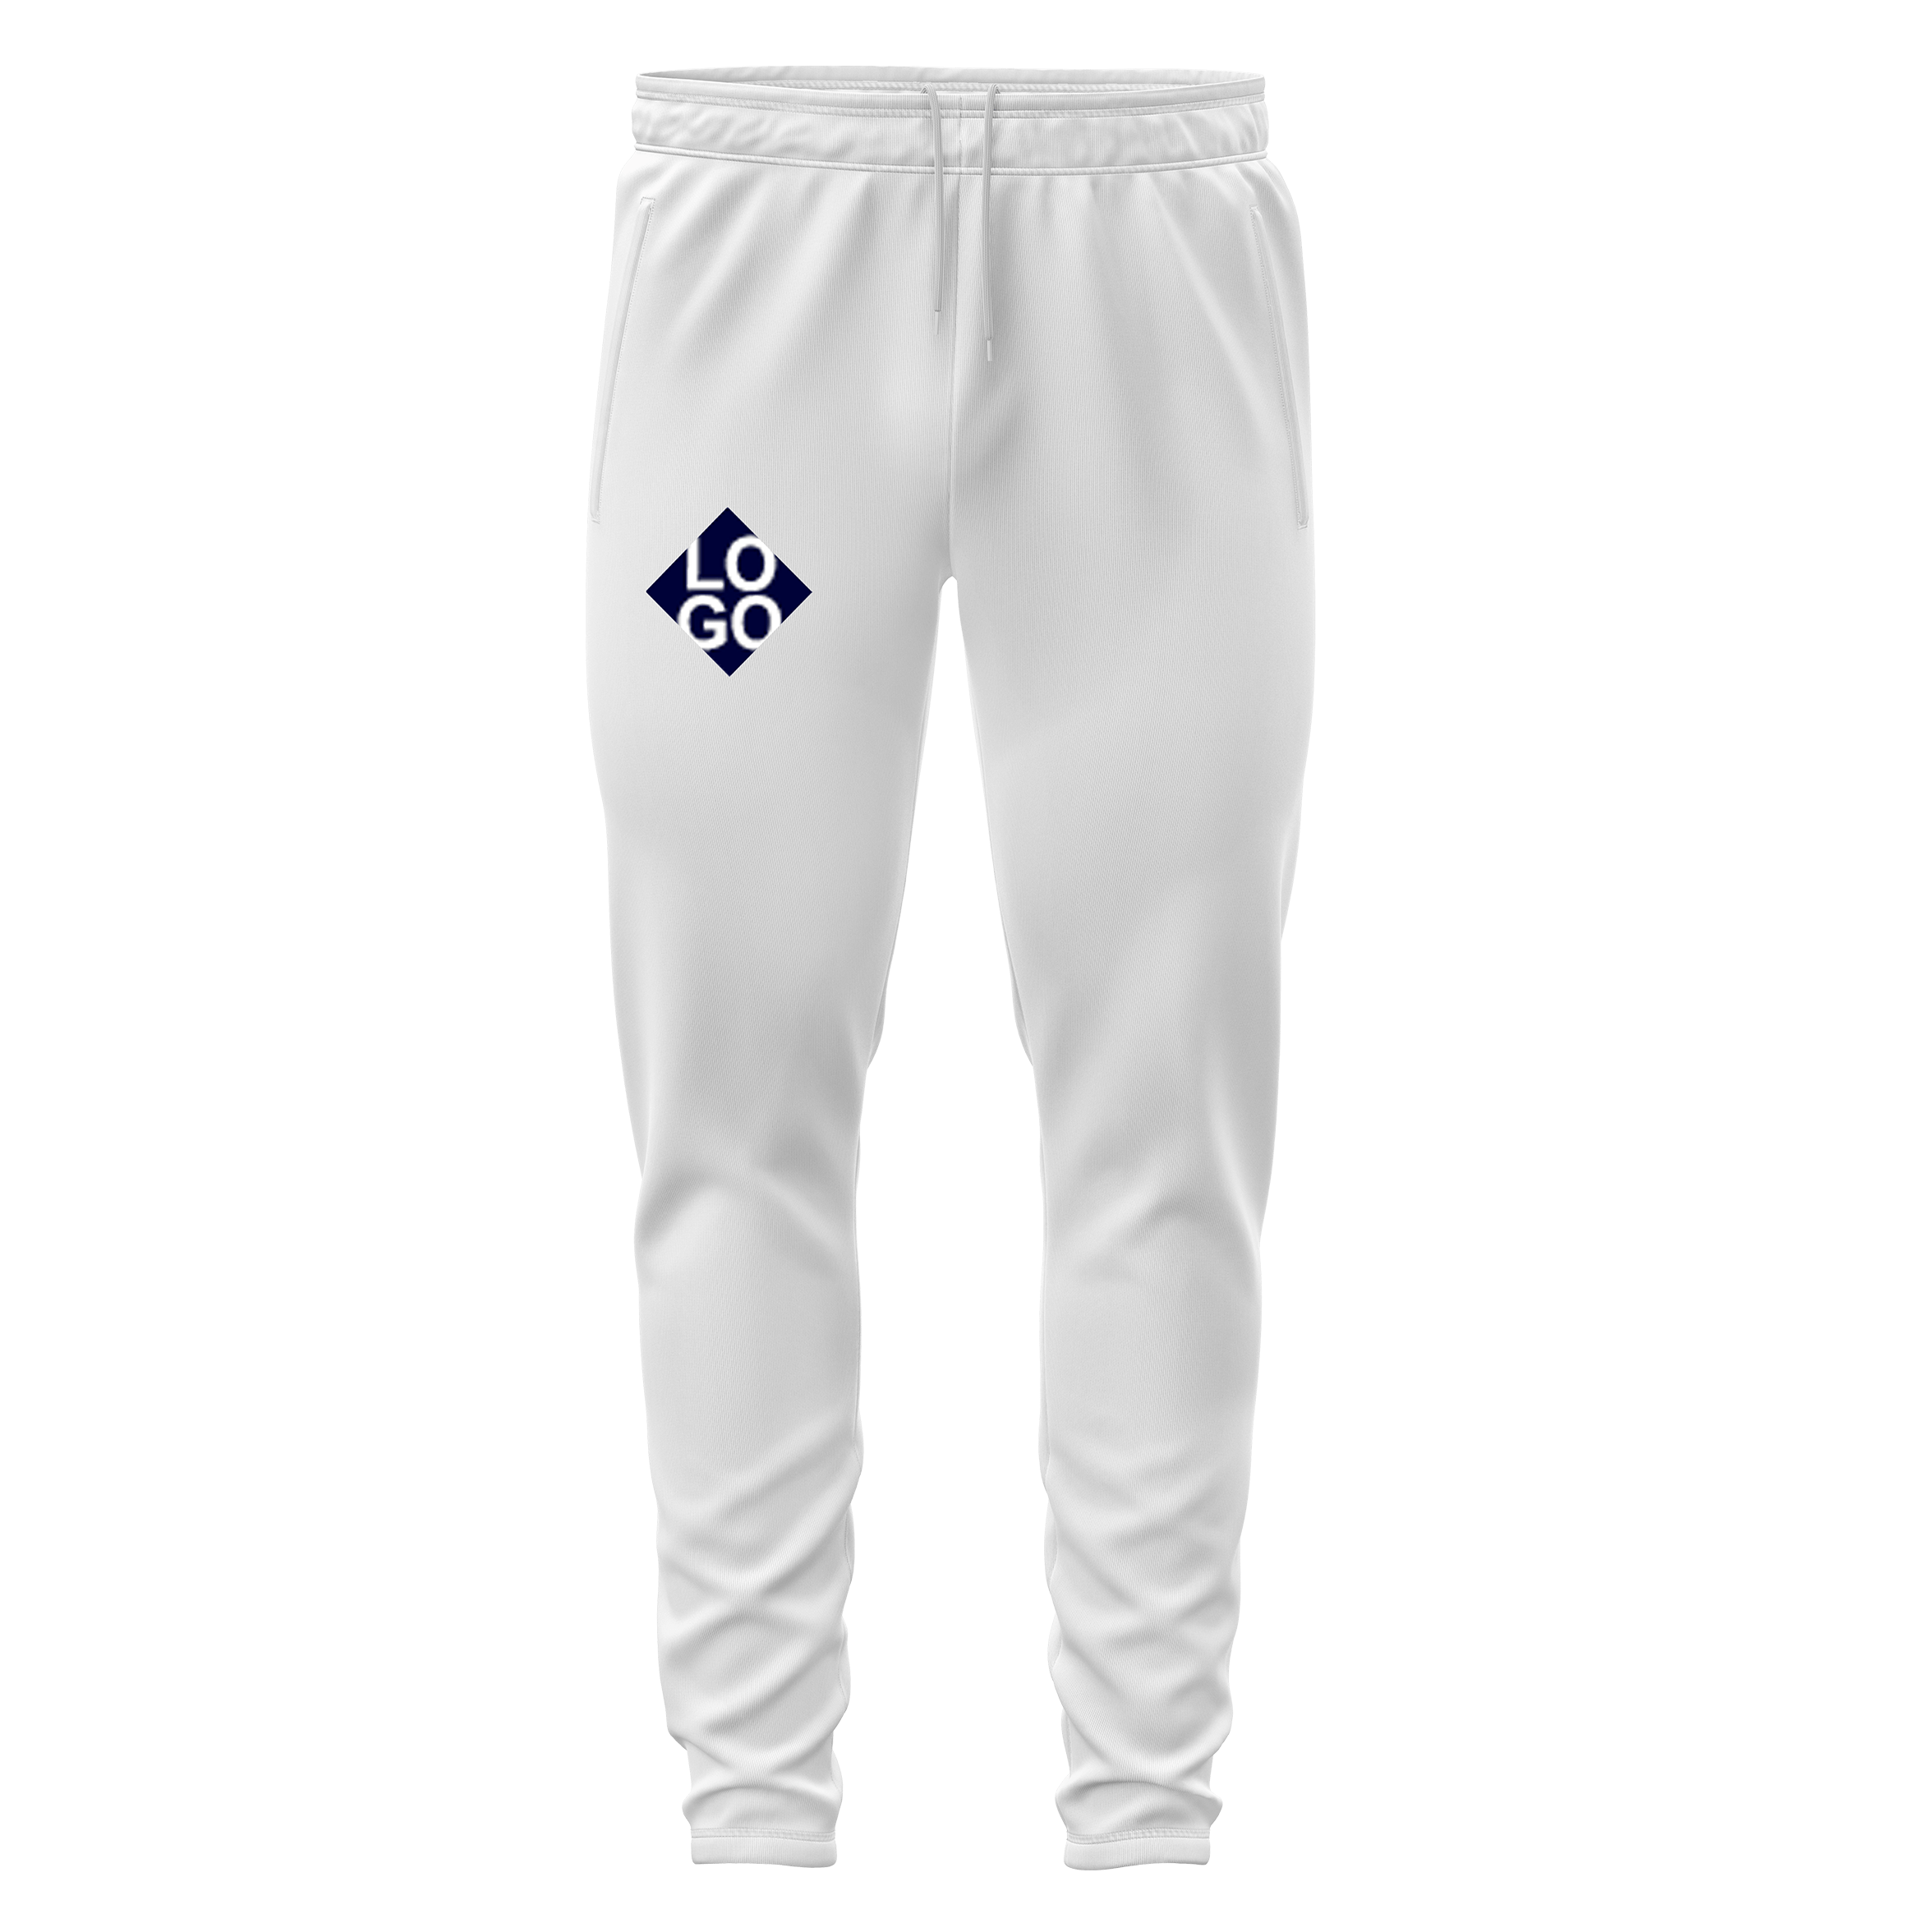 XTeamwear Team Pants Bespoke Online